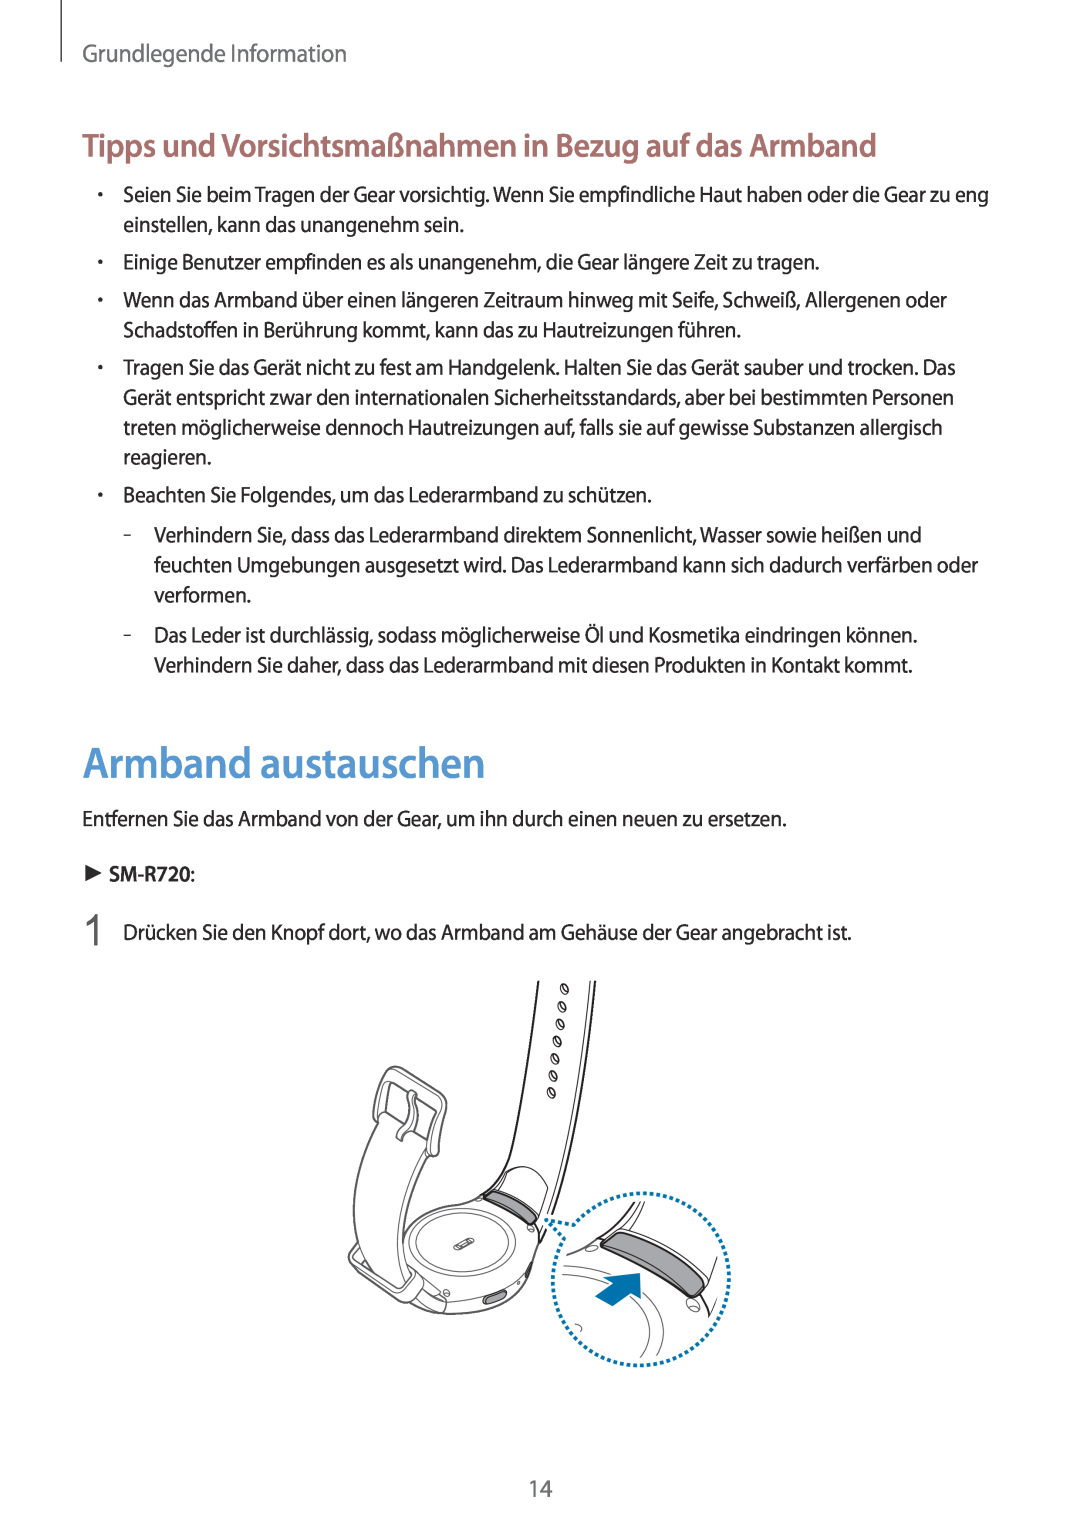 Samsung SM-R7320ZDADBT, SM-R7320ZKADBT Armband austauschen, Tipps und Vorsichtsmaßnahmen in Bezug auf das Armband, SM-R720 